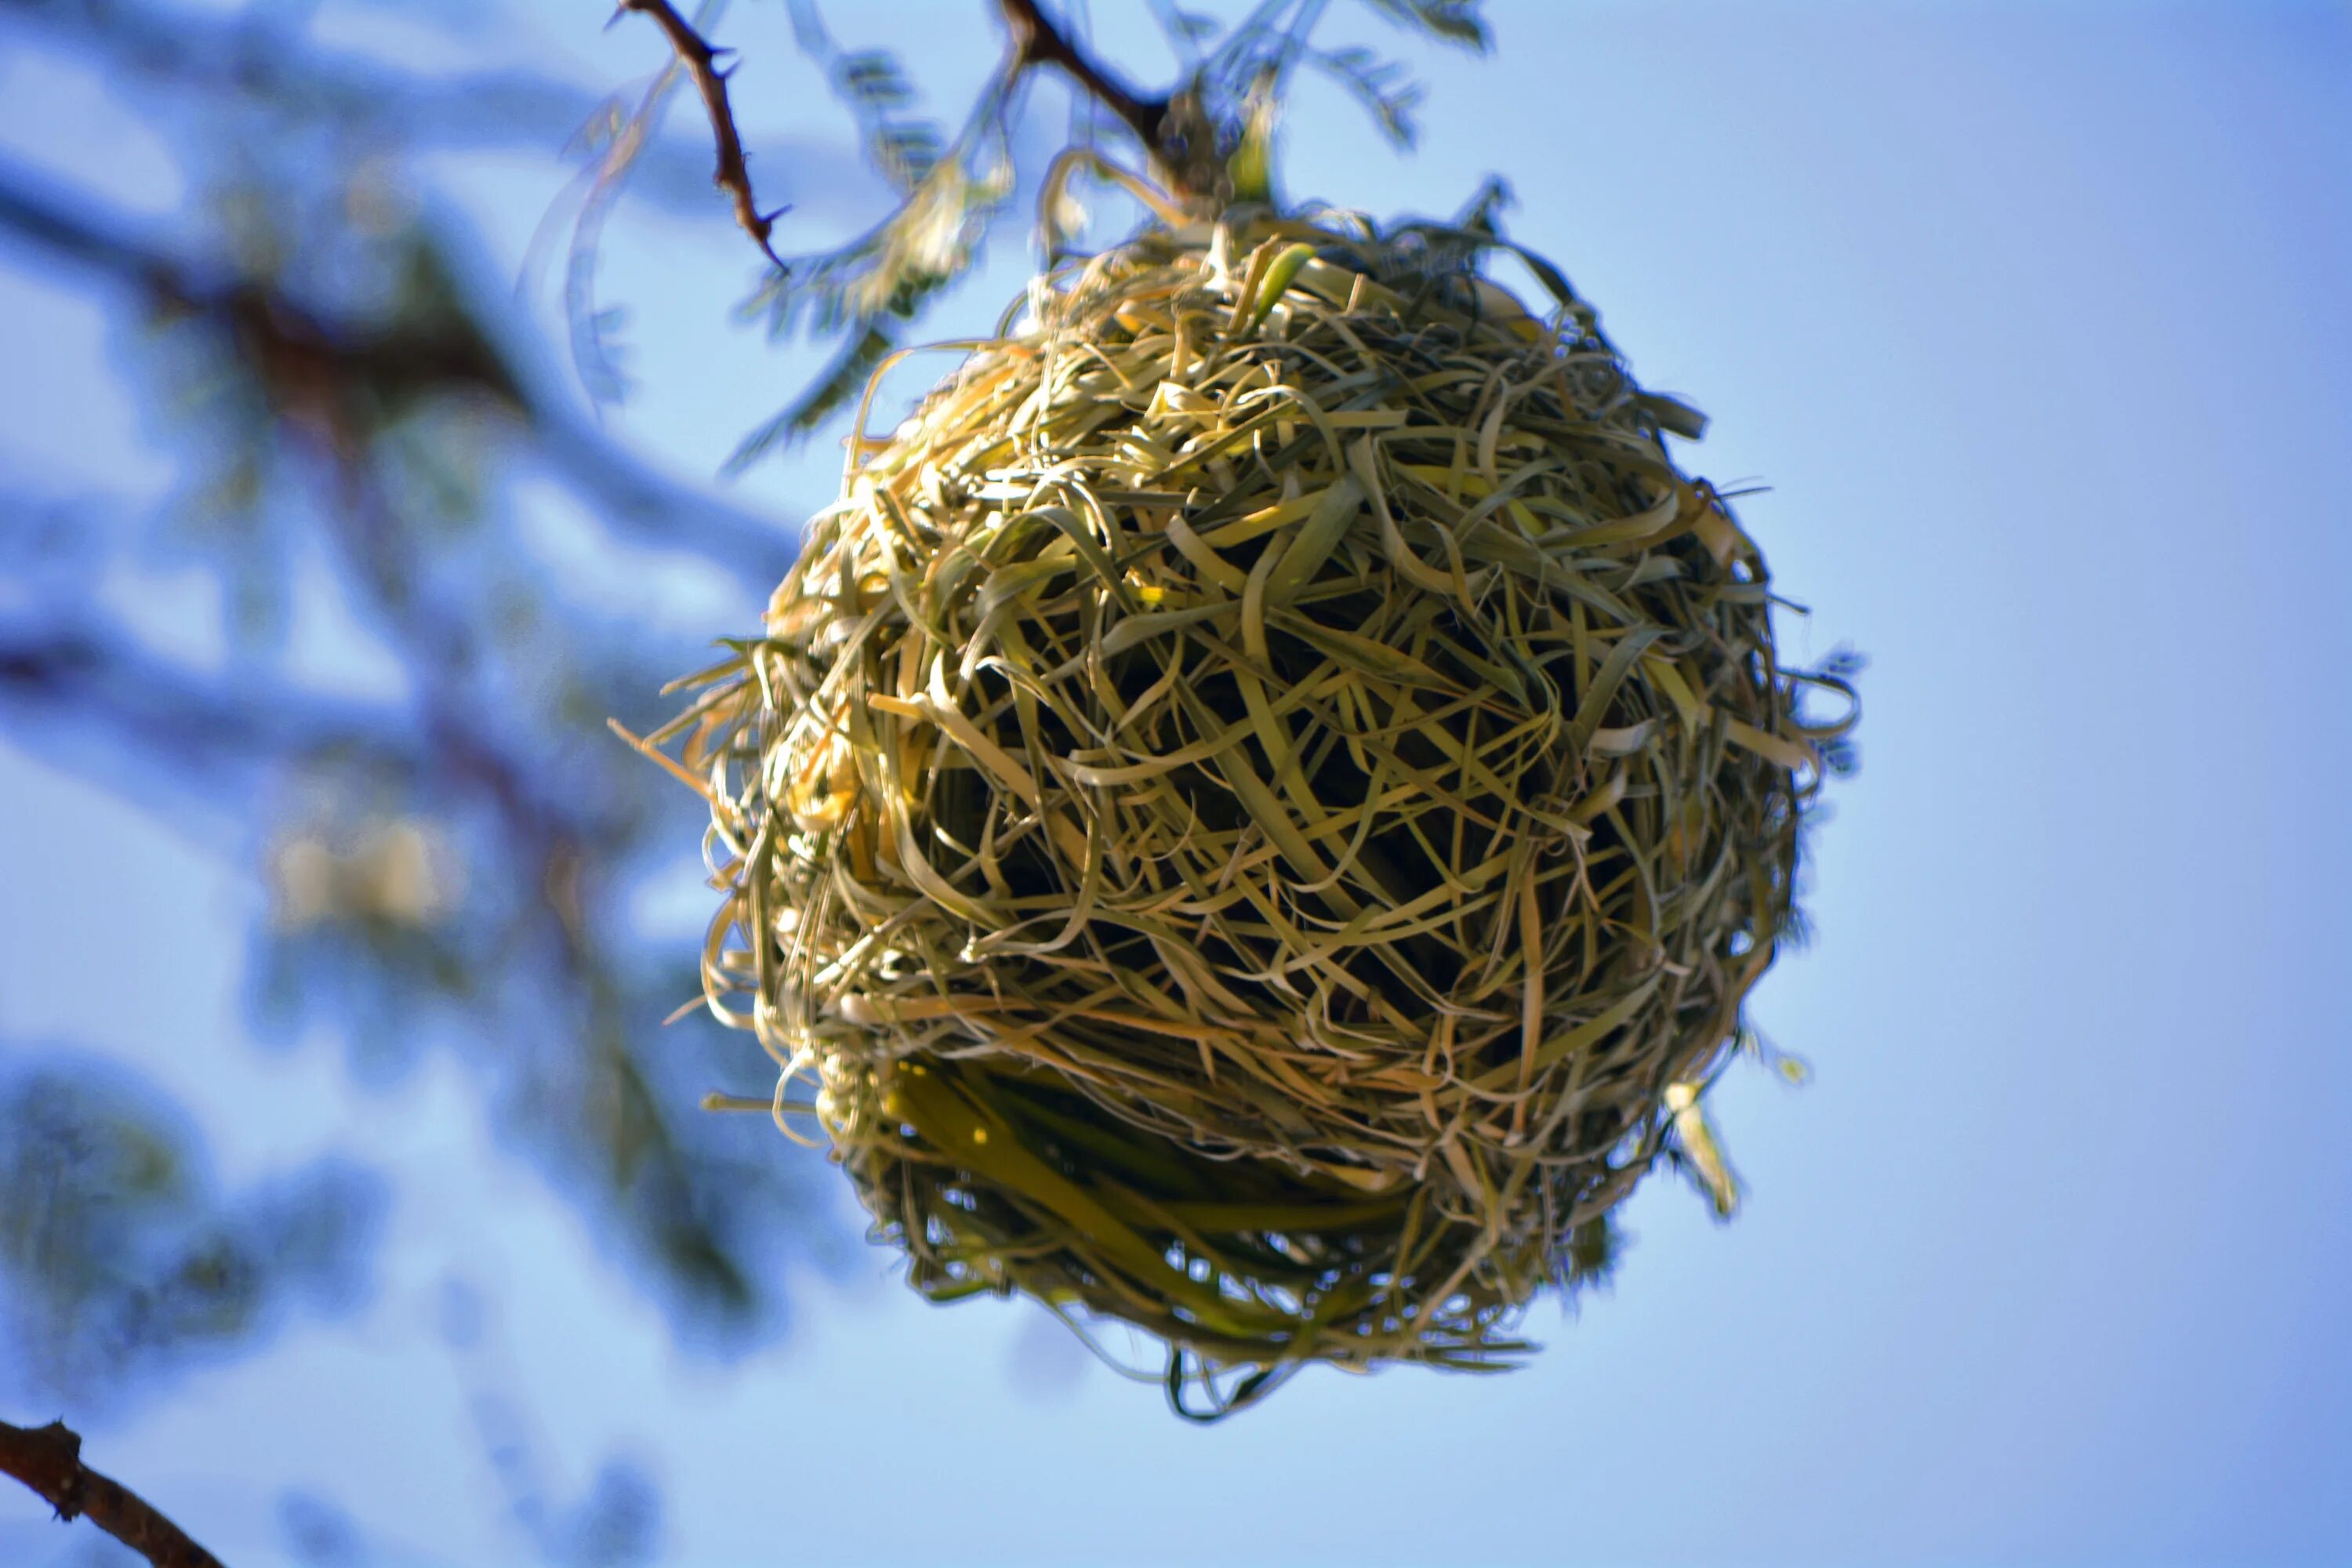 Plant nest. Гнездо гнездиться гнездовье гнездовой. Гнездо вьюрка. Гнездовье Лашш. Джексон ш. "Птичье гнездо".